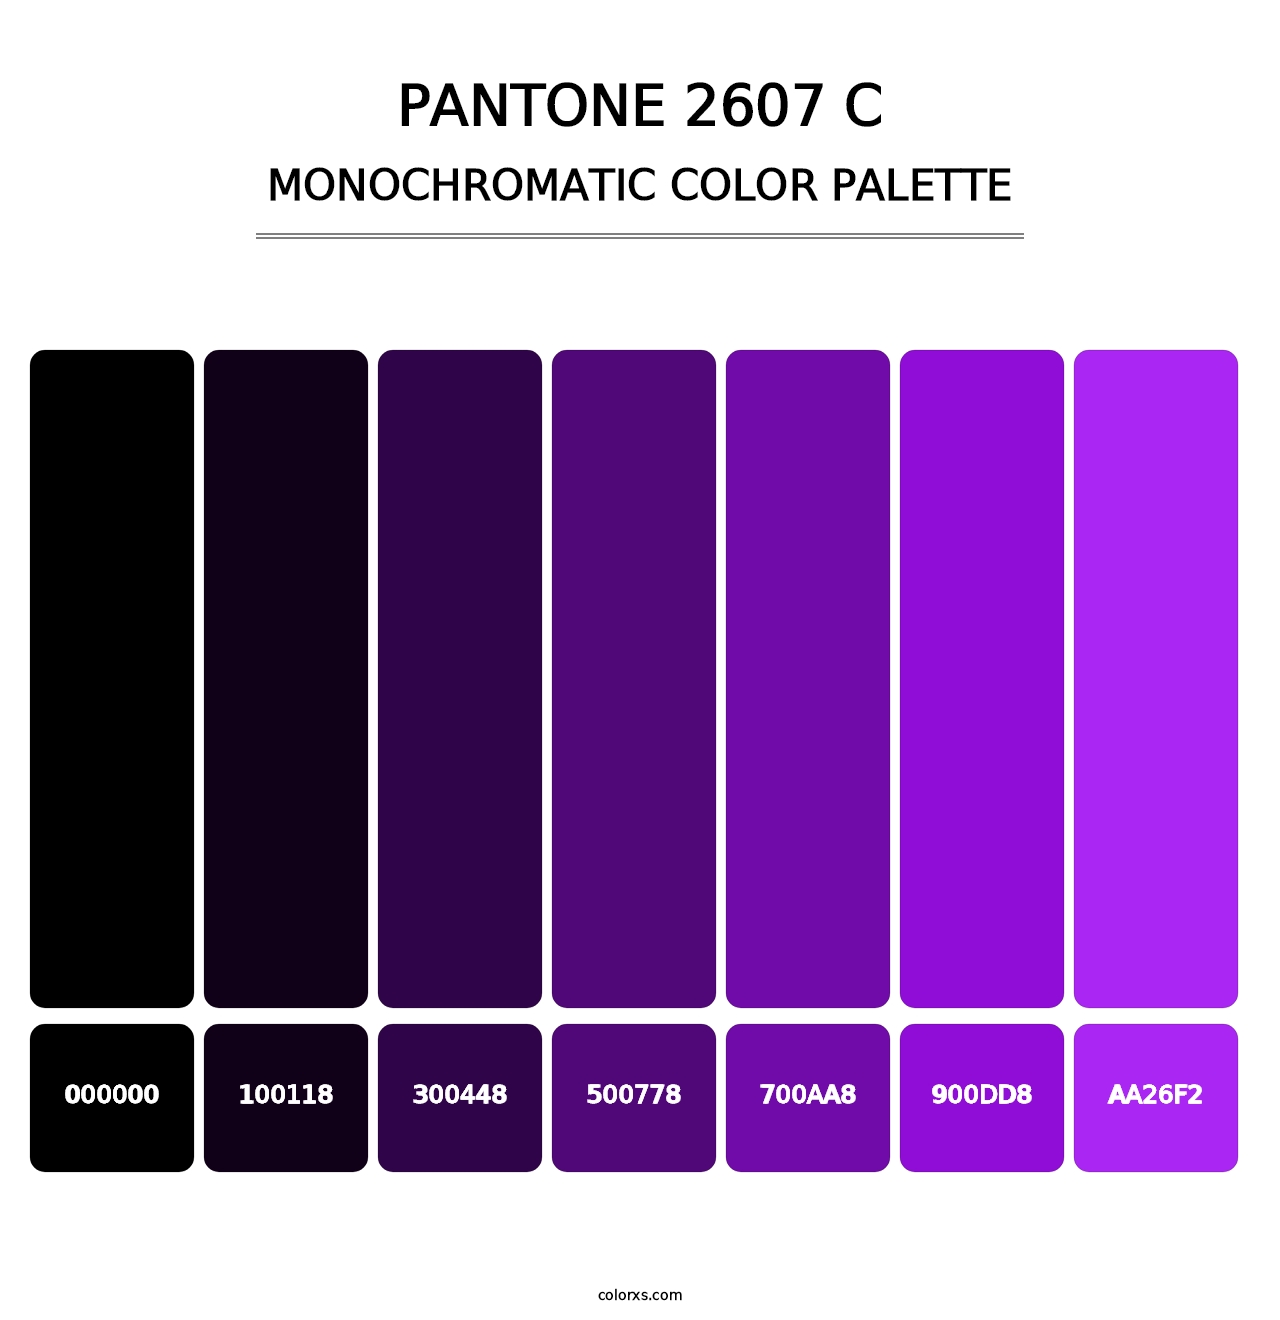 PANTONE 2607 C - Monochromatic Color Palette